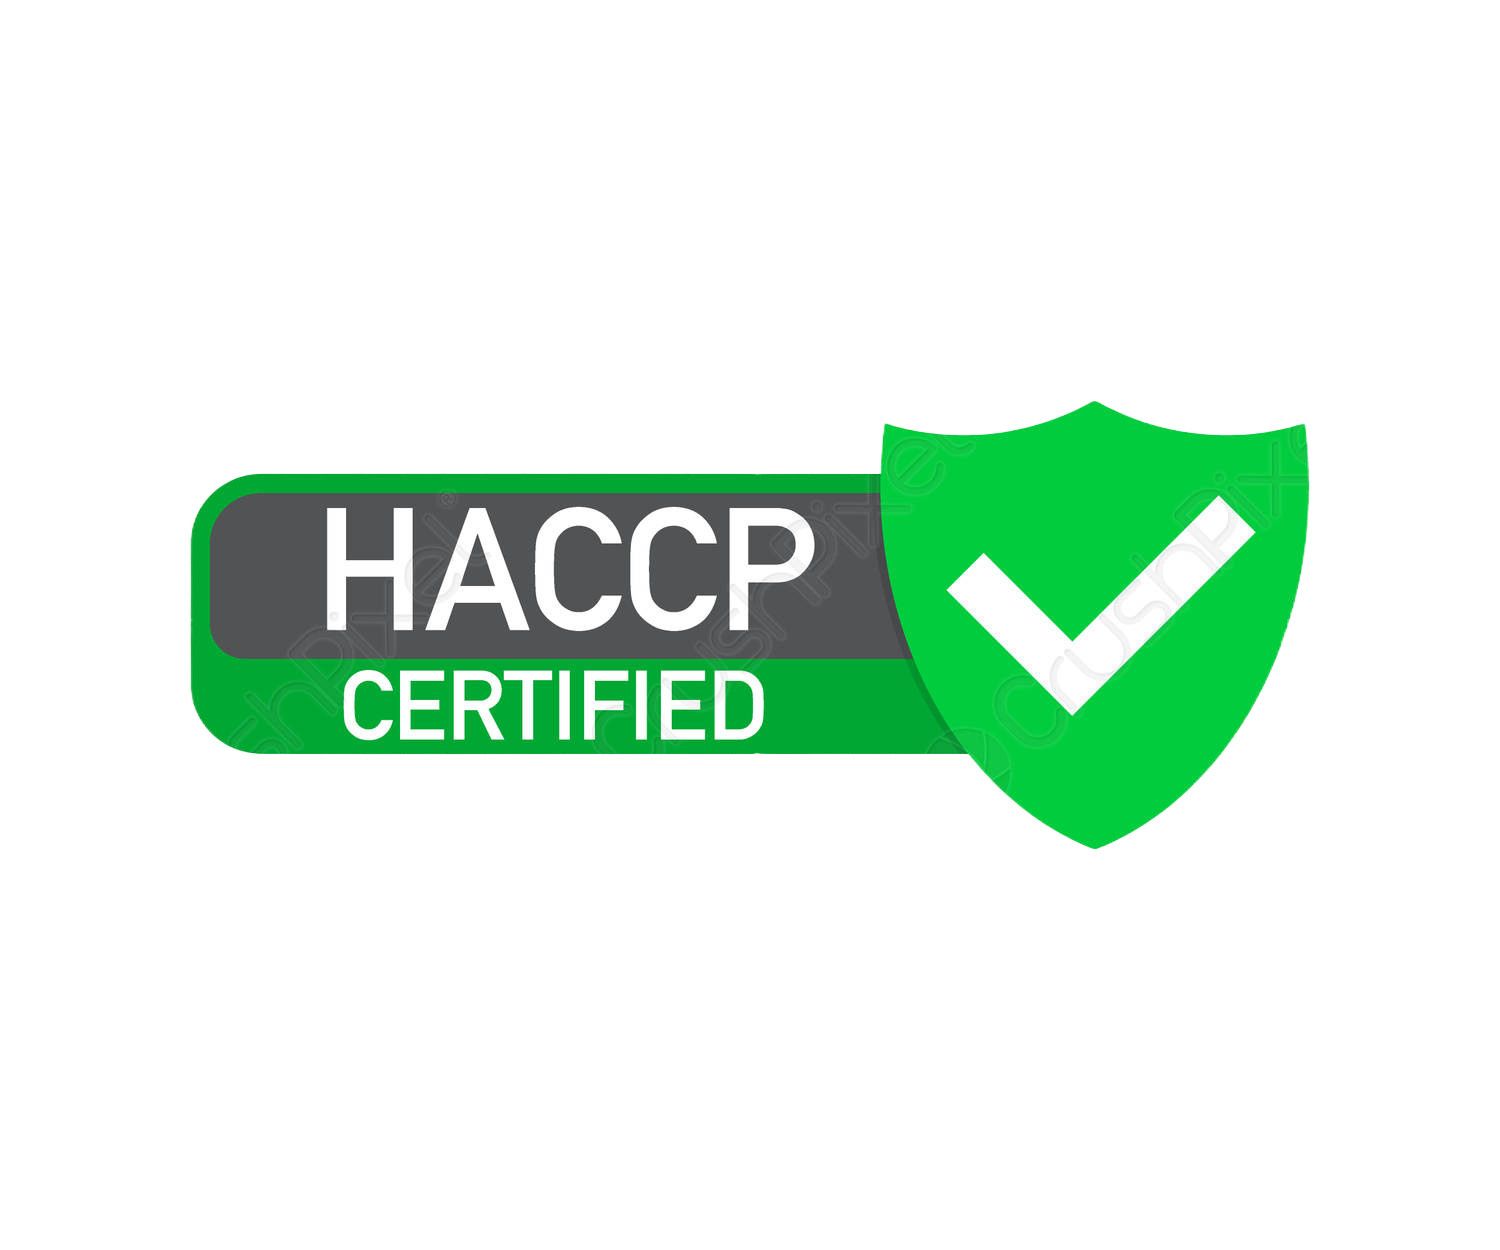 haccp formazionje servizi nuovasas cpa 2023